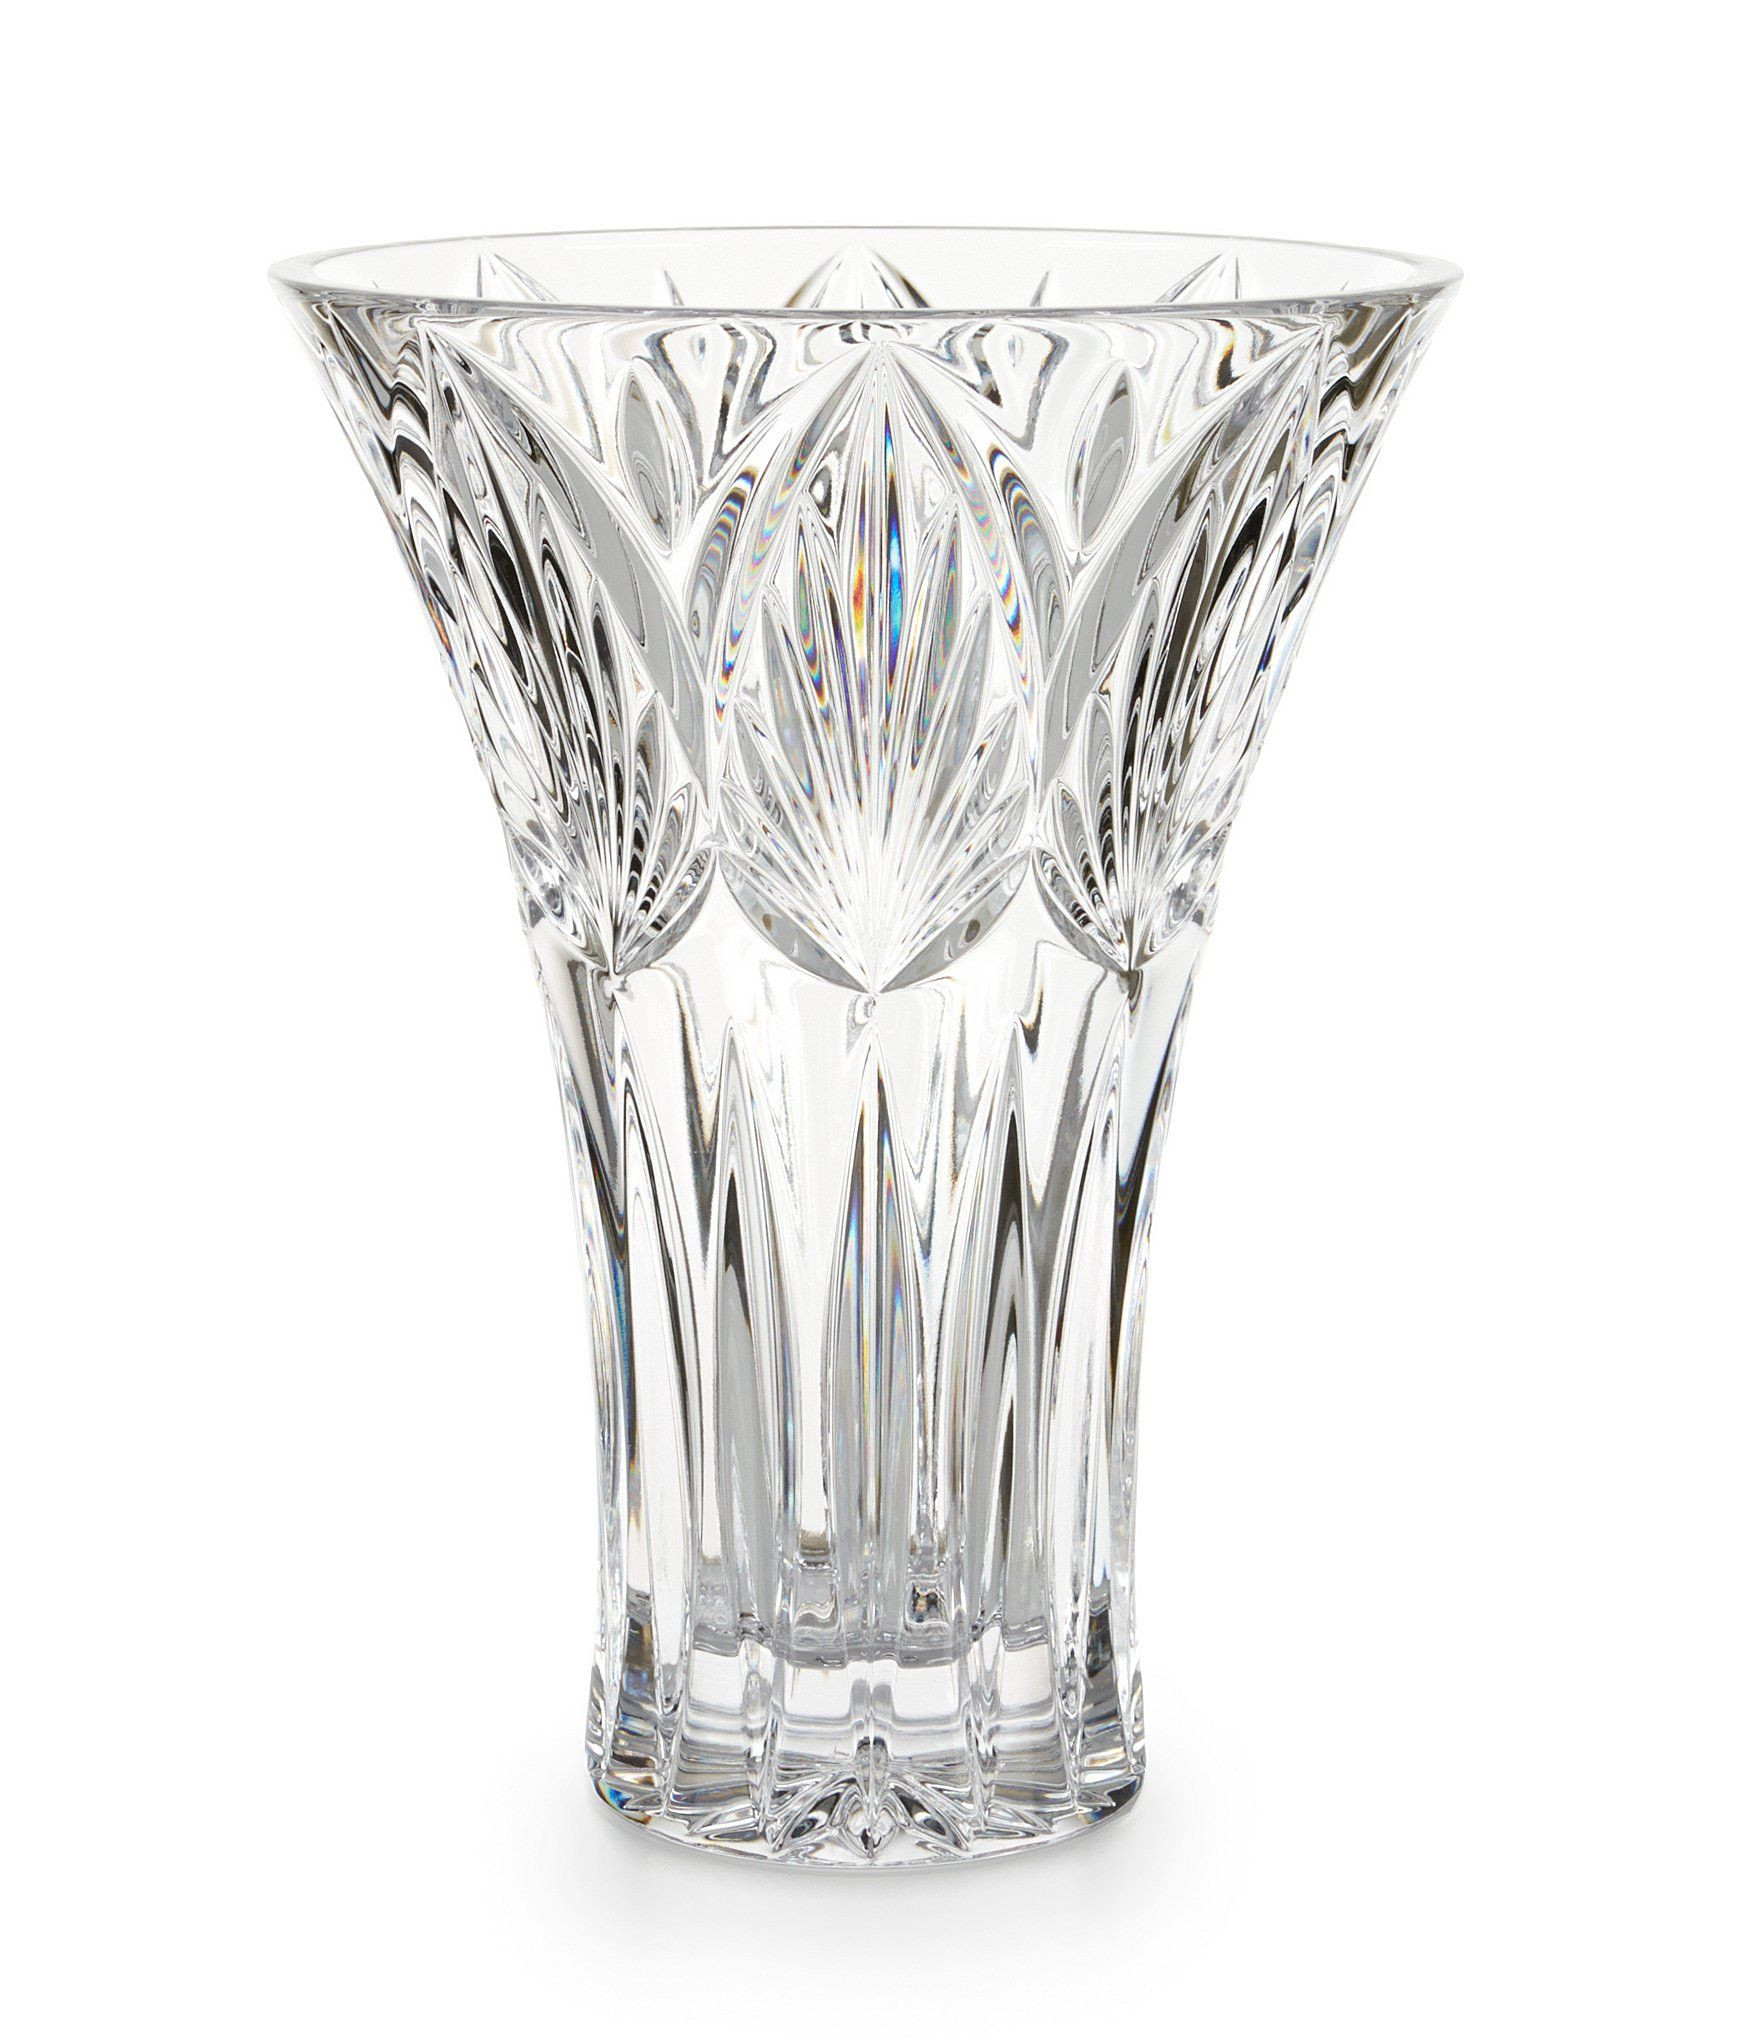 lenox clear glass vase of waterford westbridge crystal vase crystal vase dillards and crystals regarding waterford westbridge crystal vase dillards